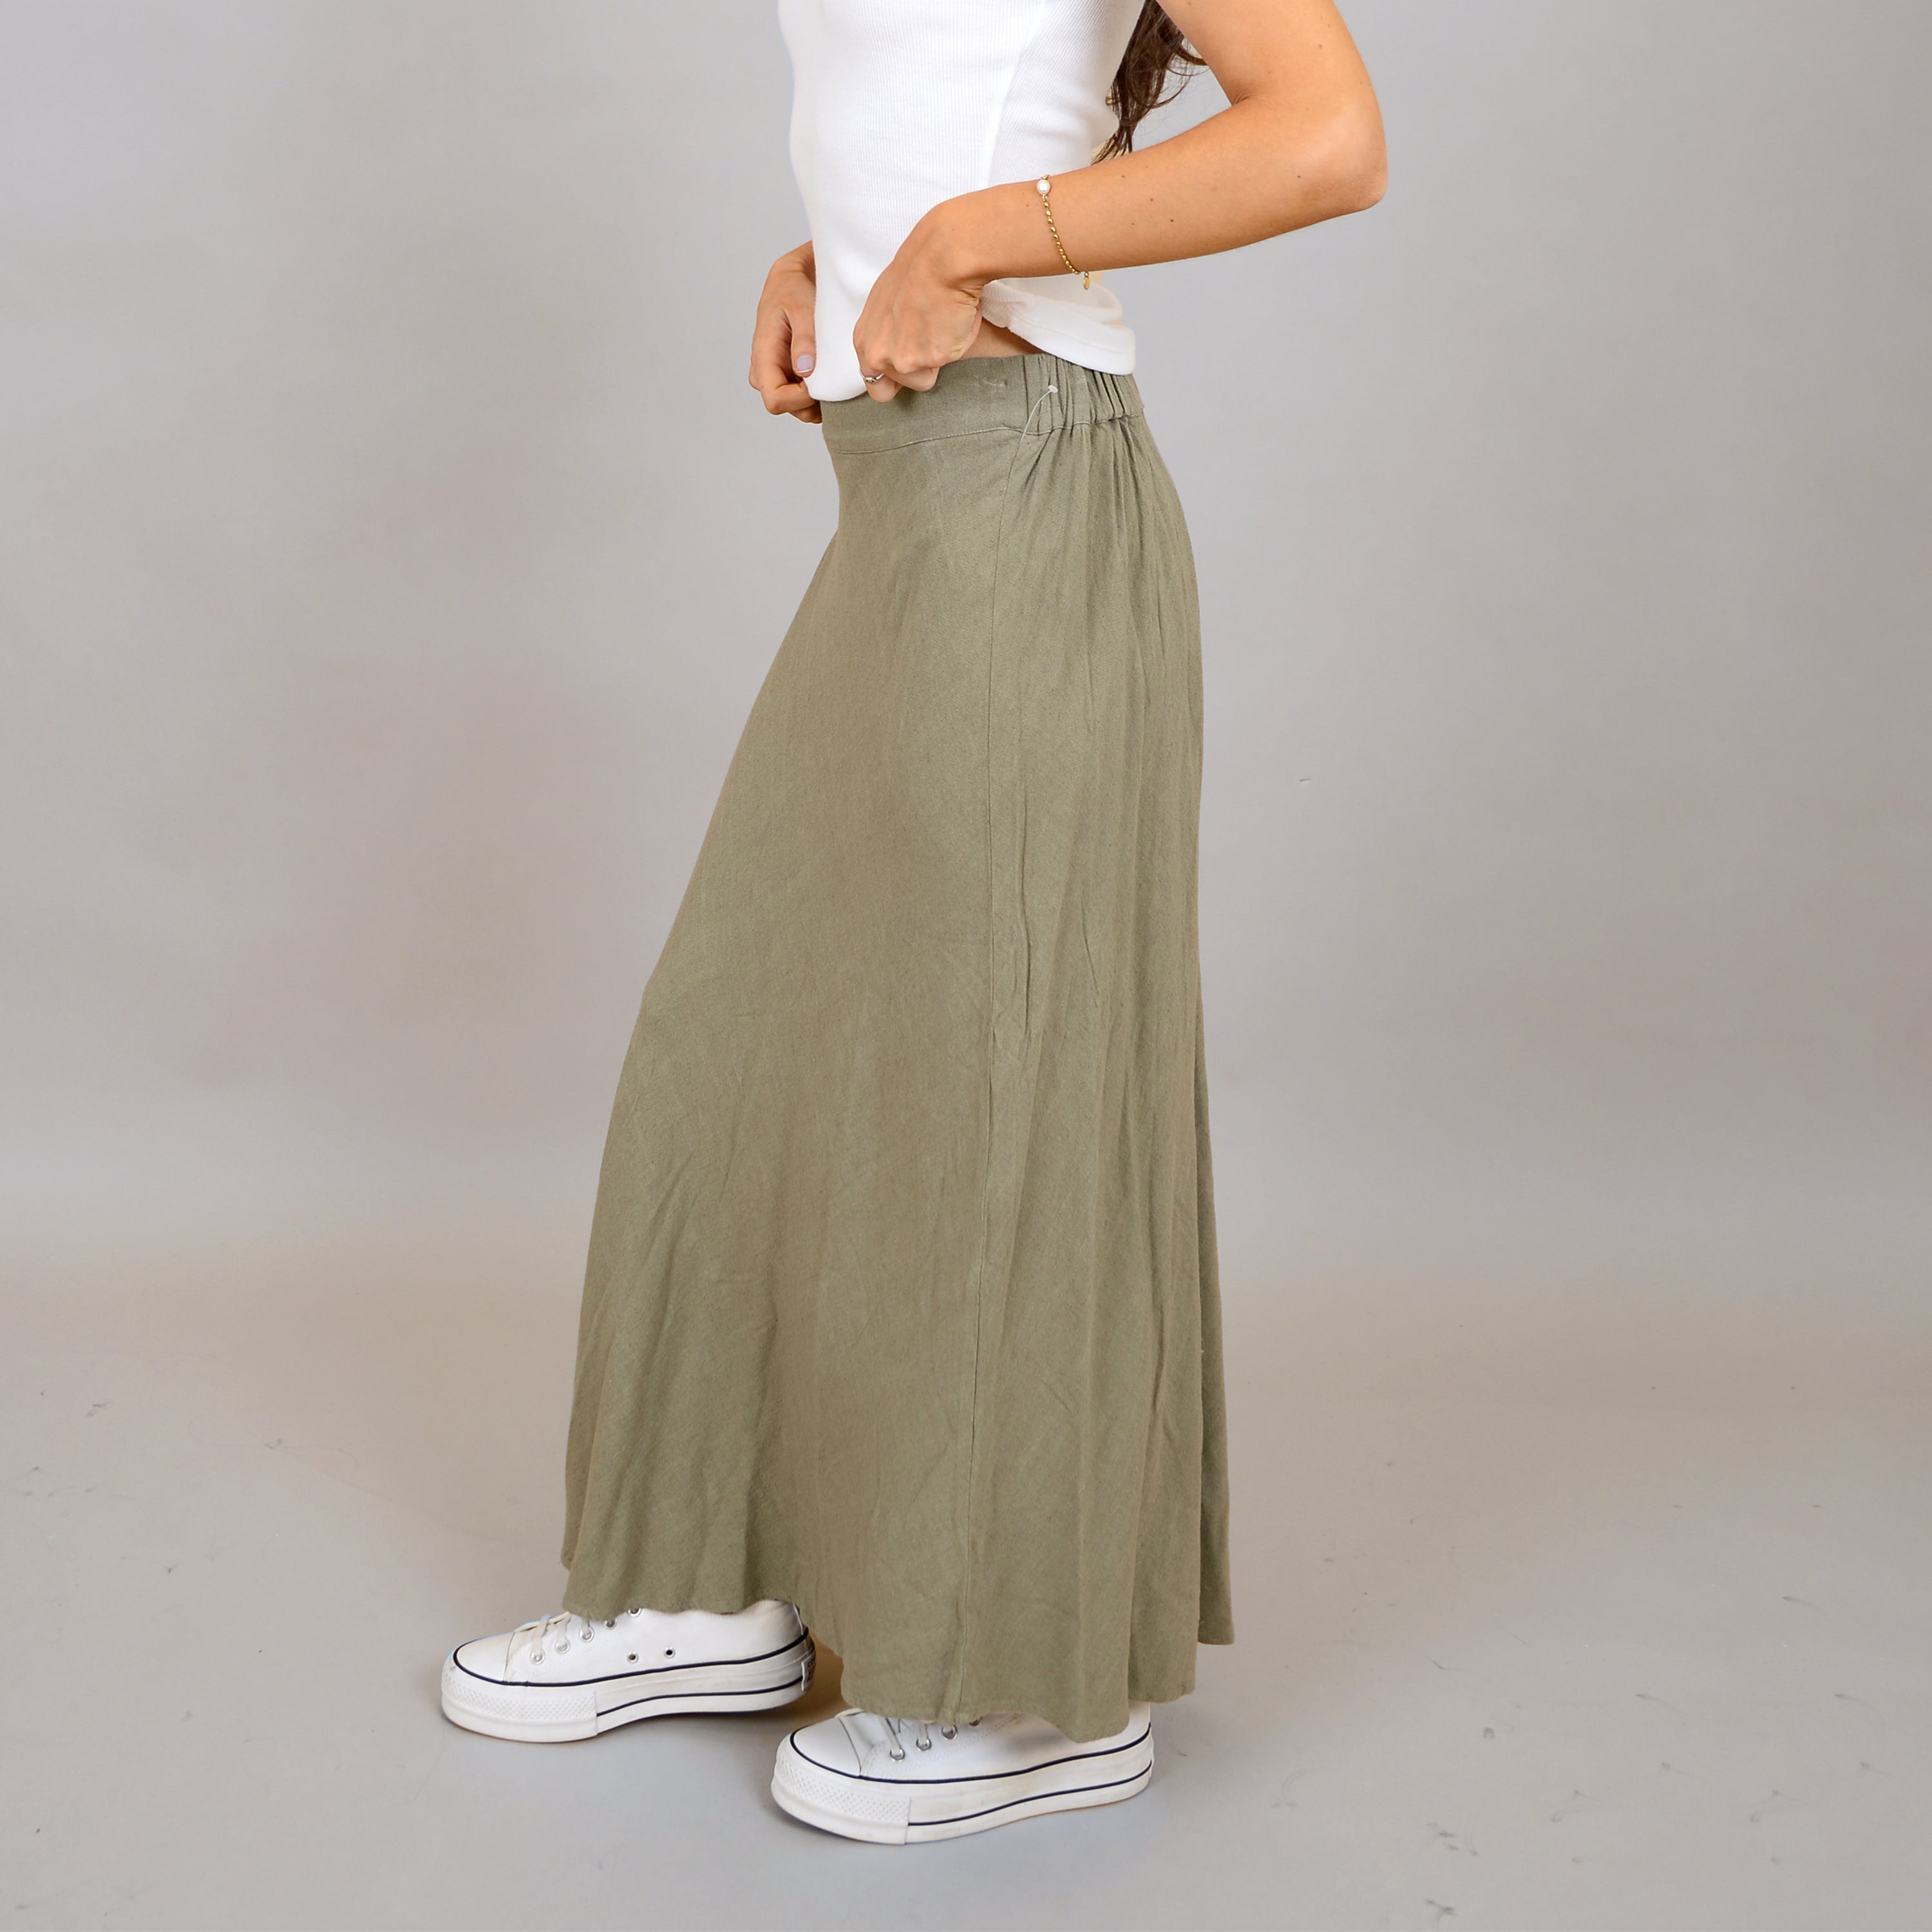 The Linen Moss Maxi Skirt